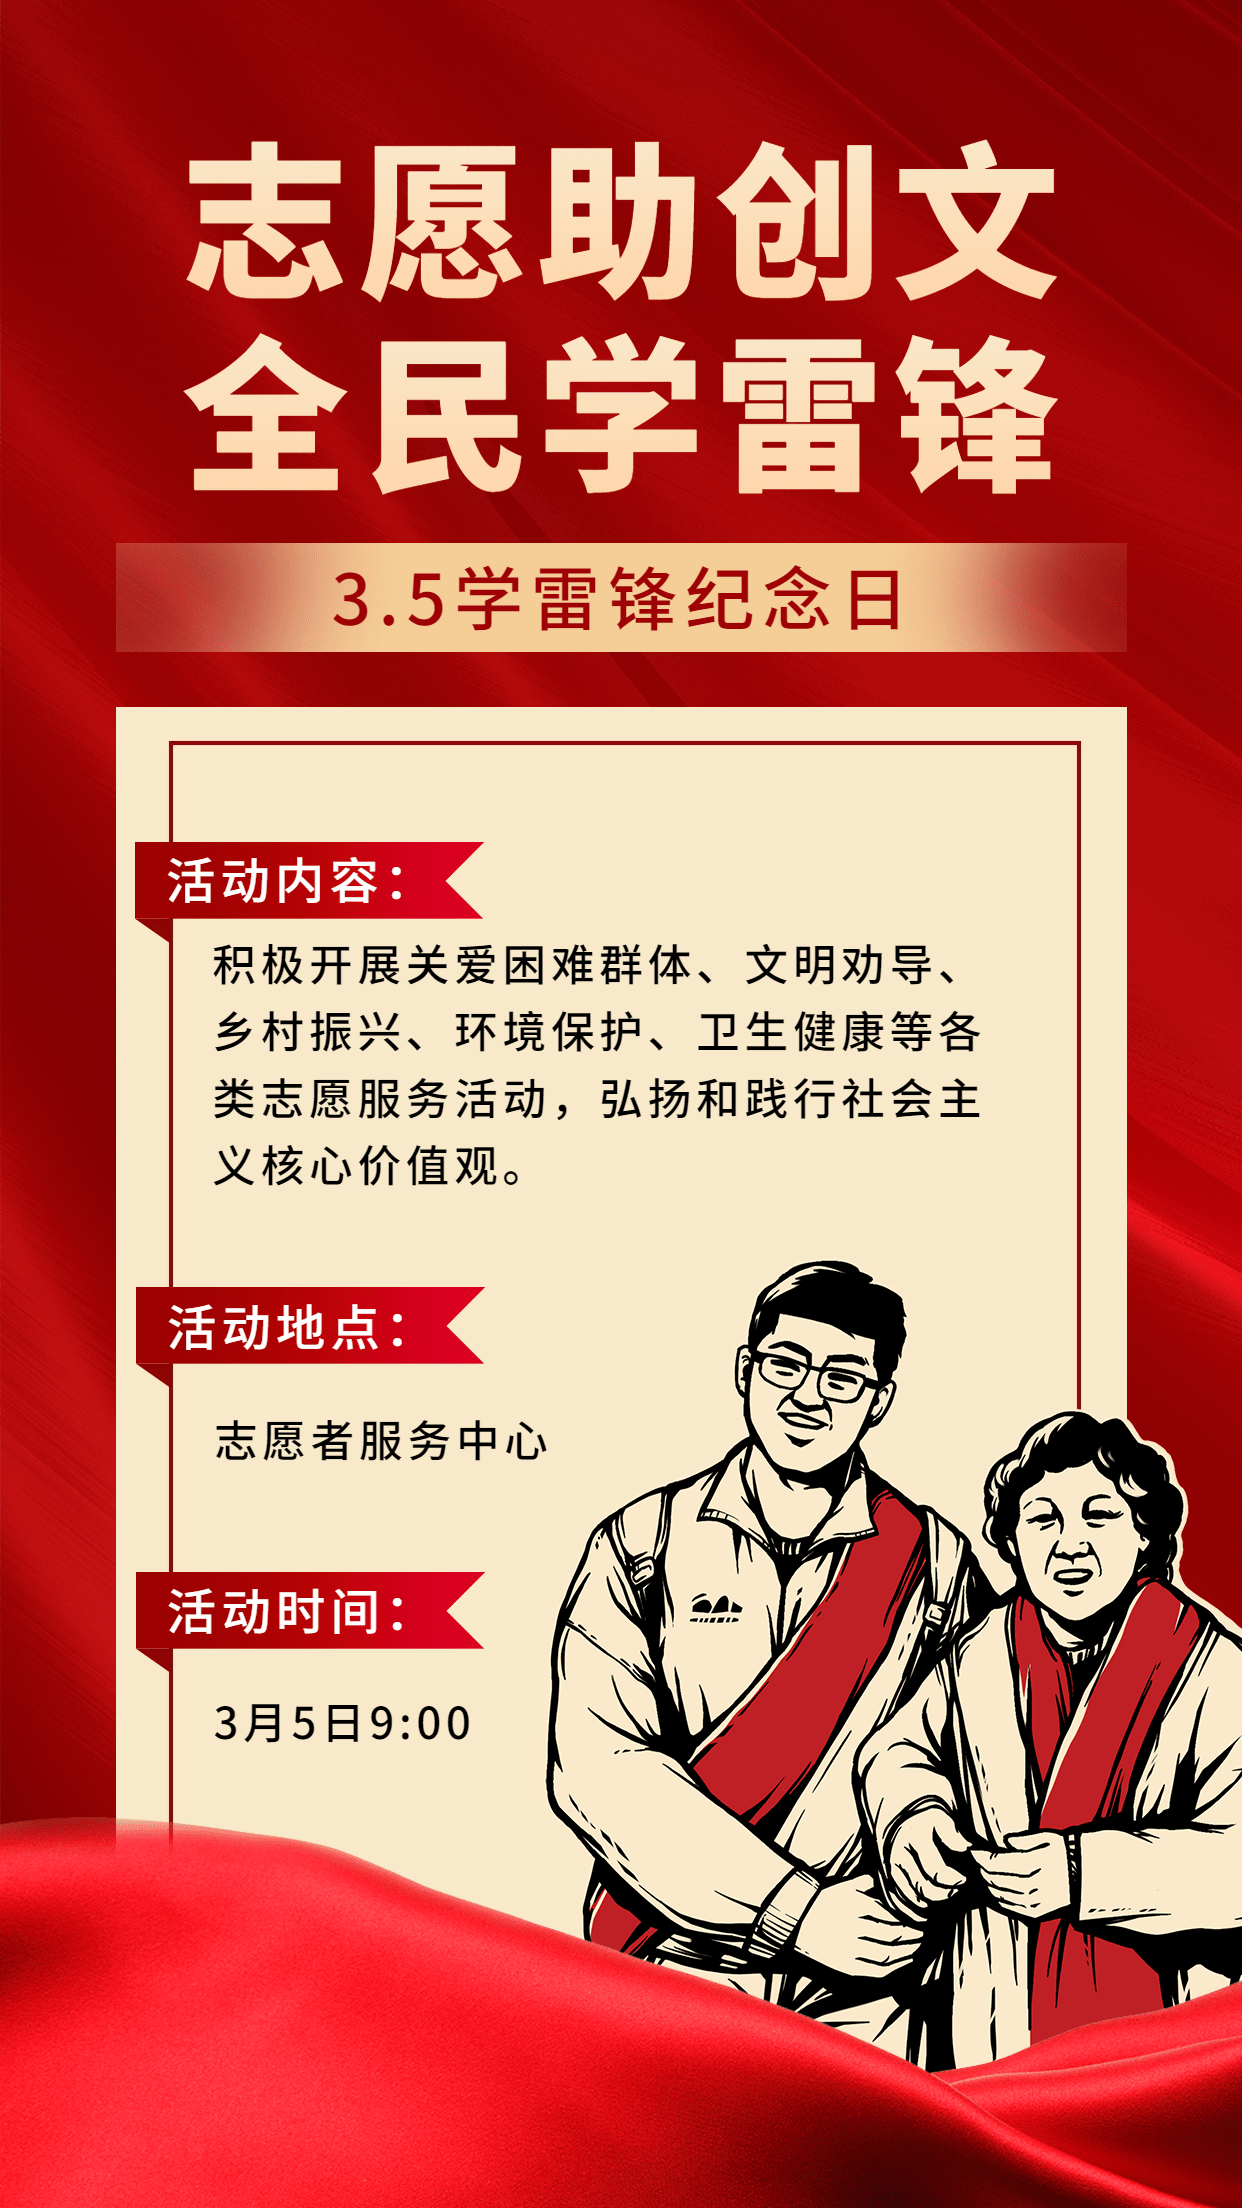 3.5学雷锋日节日活动手机海报